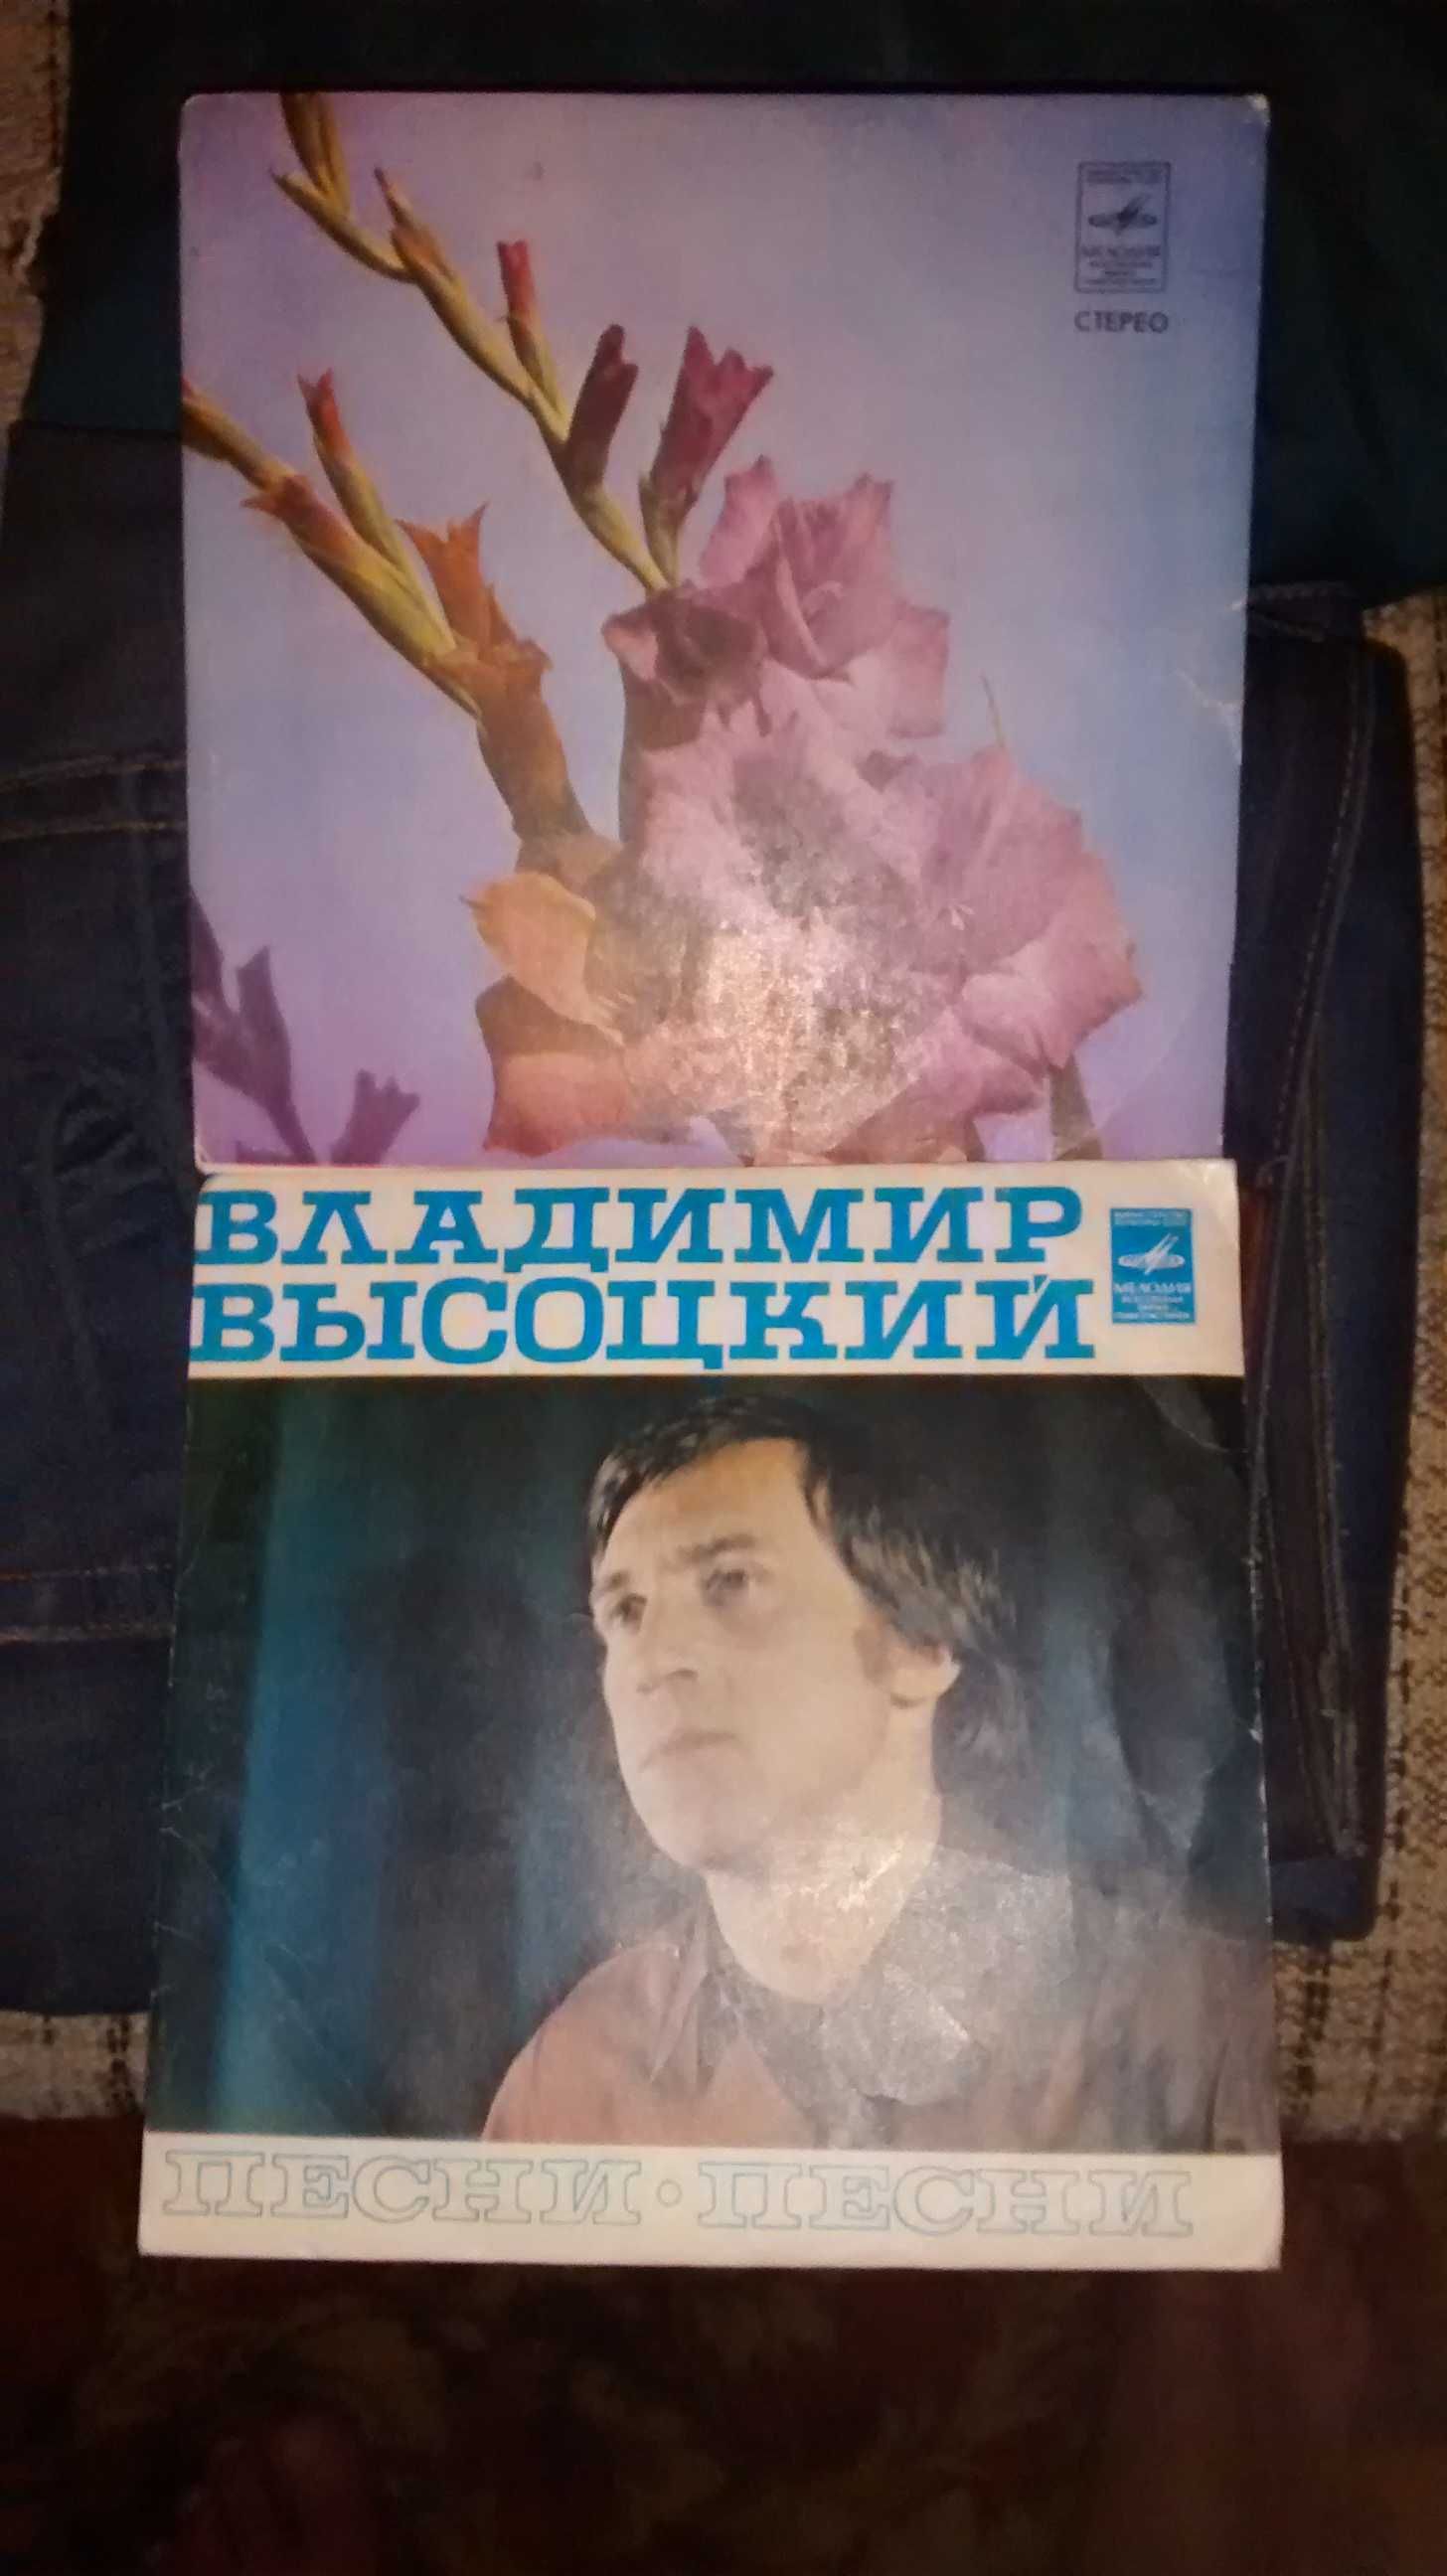 Комплект пластинок "песни Владимира Высоцкого", (две маленькие)